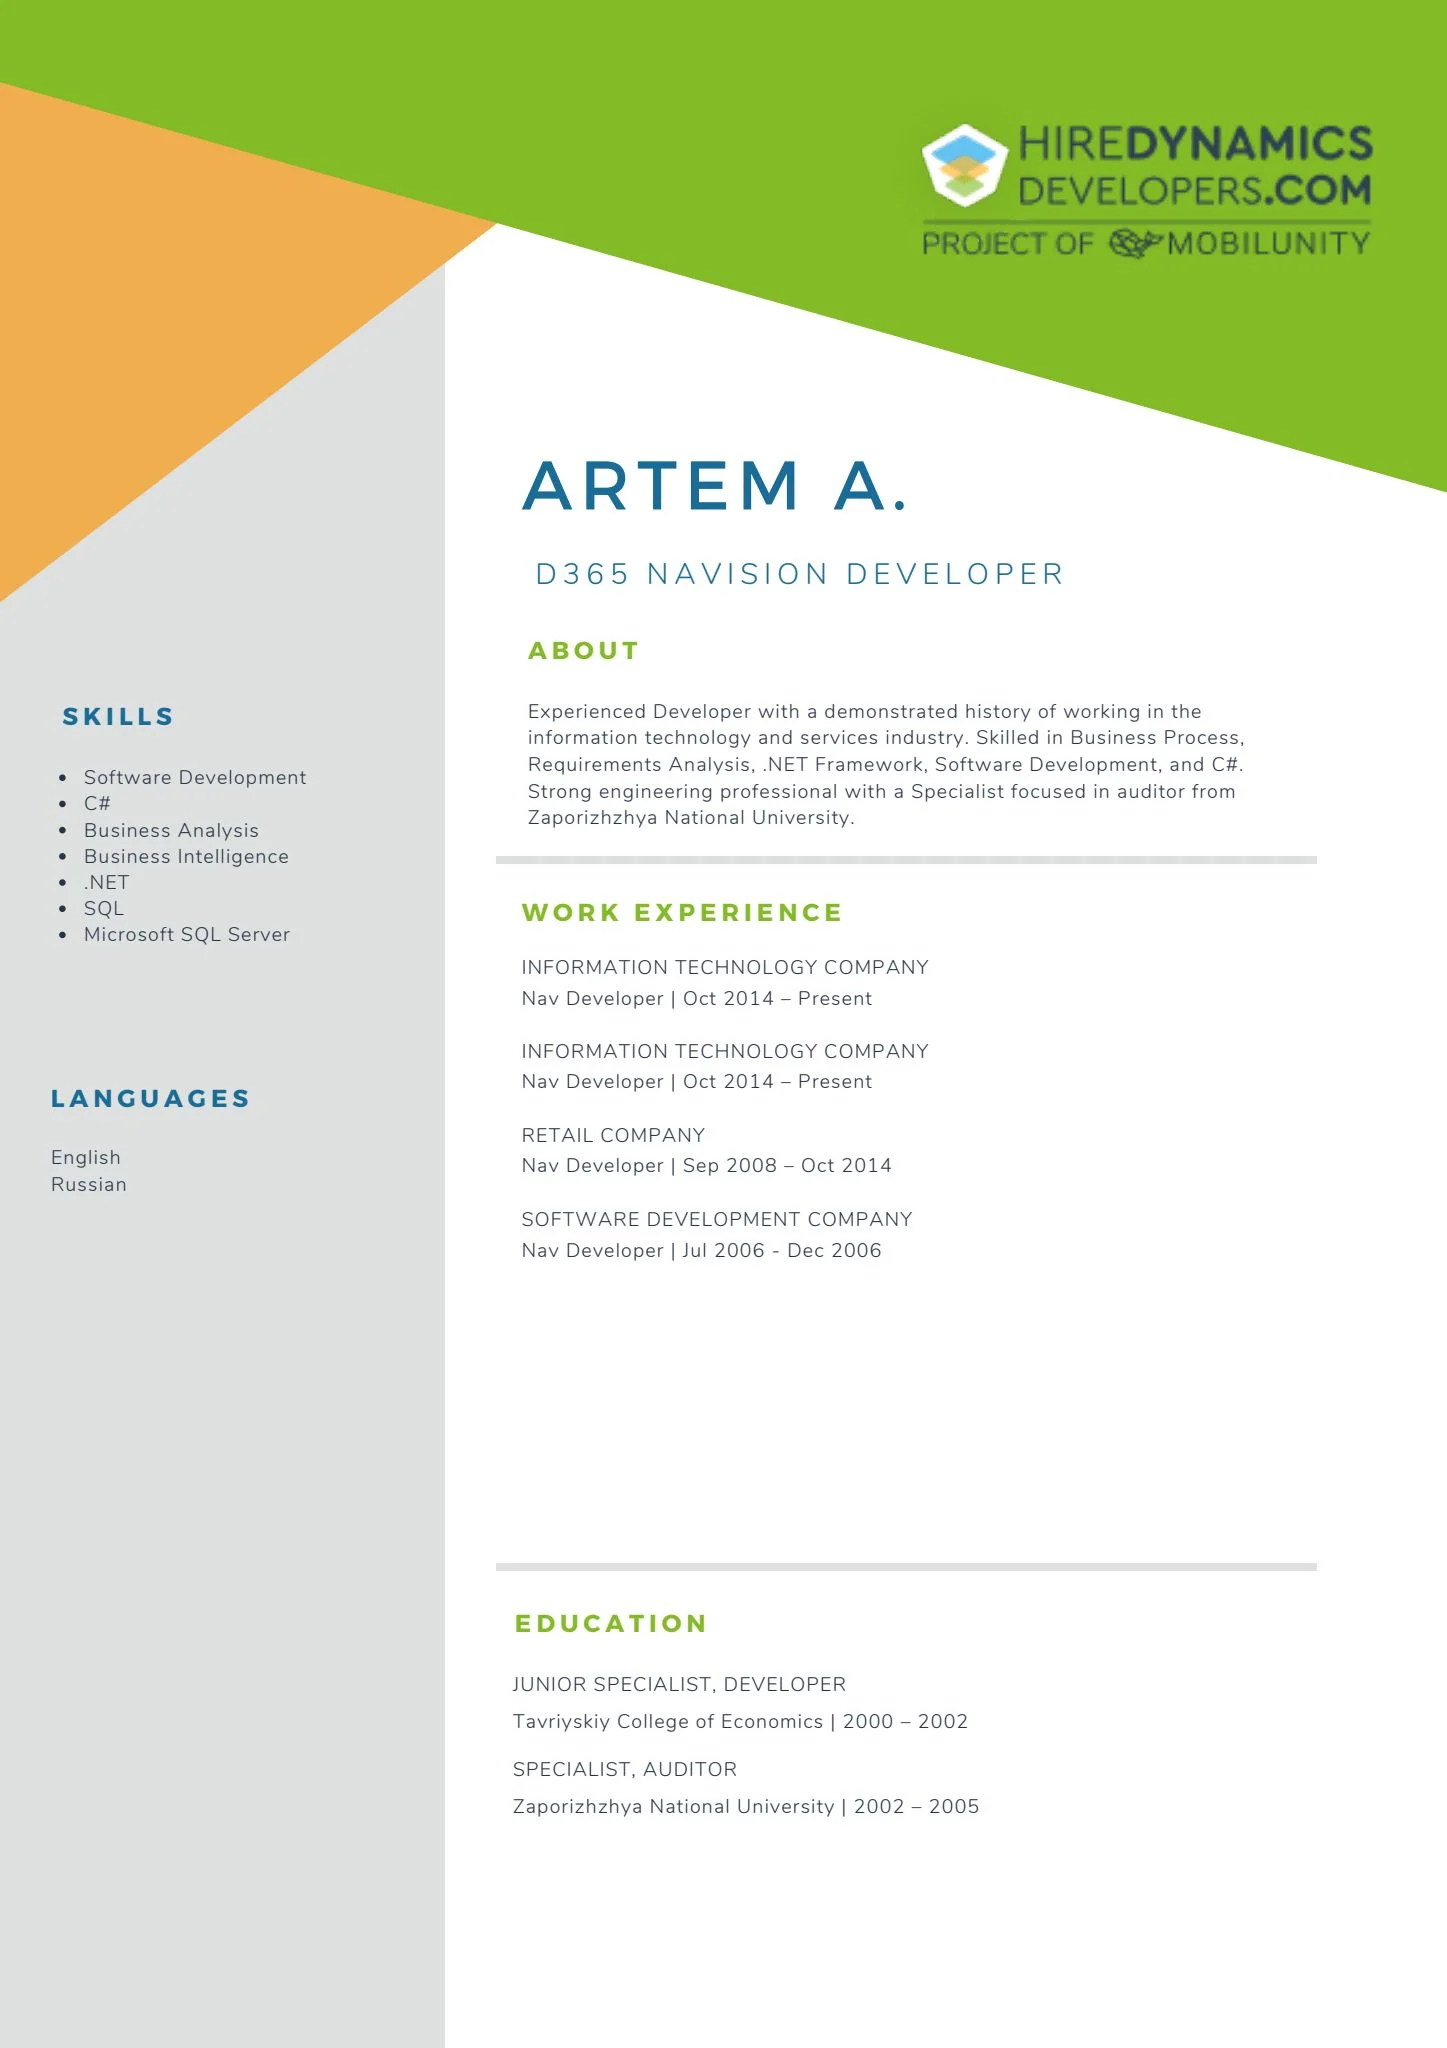 Artem A. – D365 Solution Developer / Navision Developer